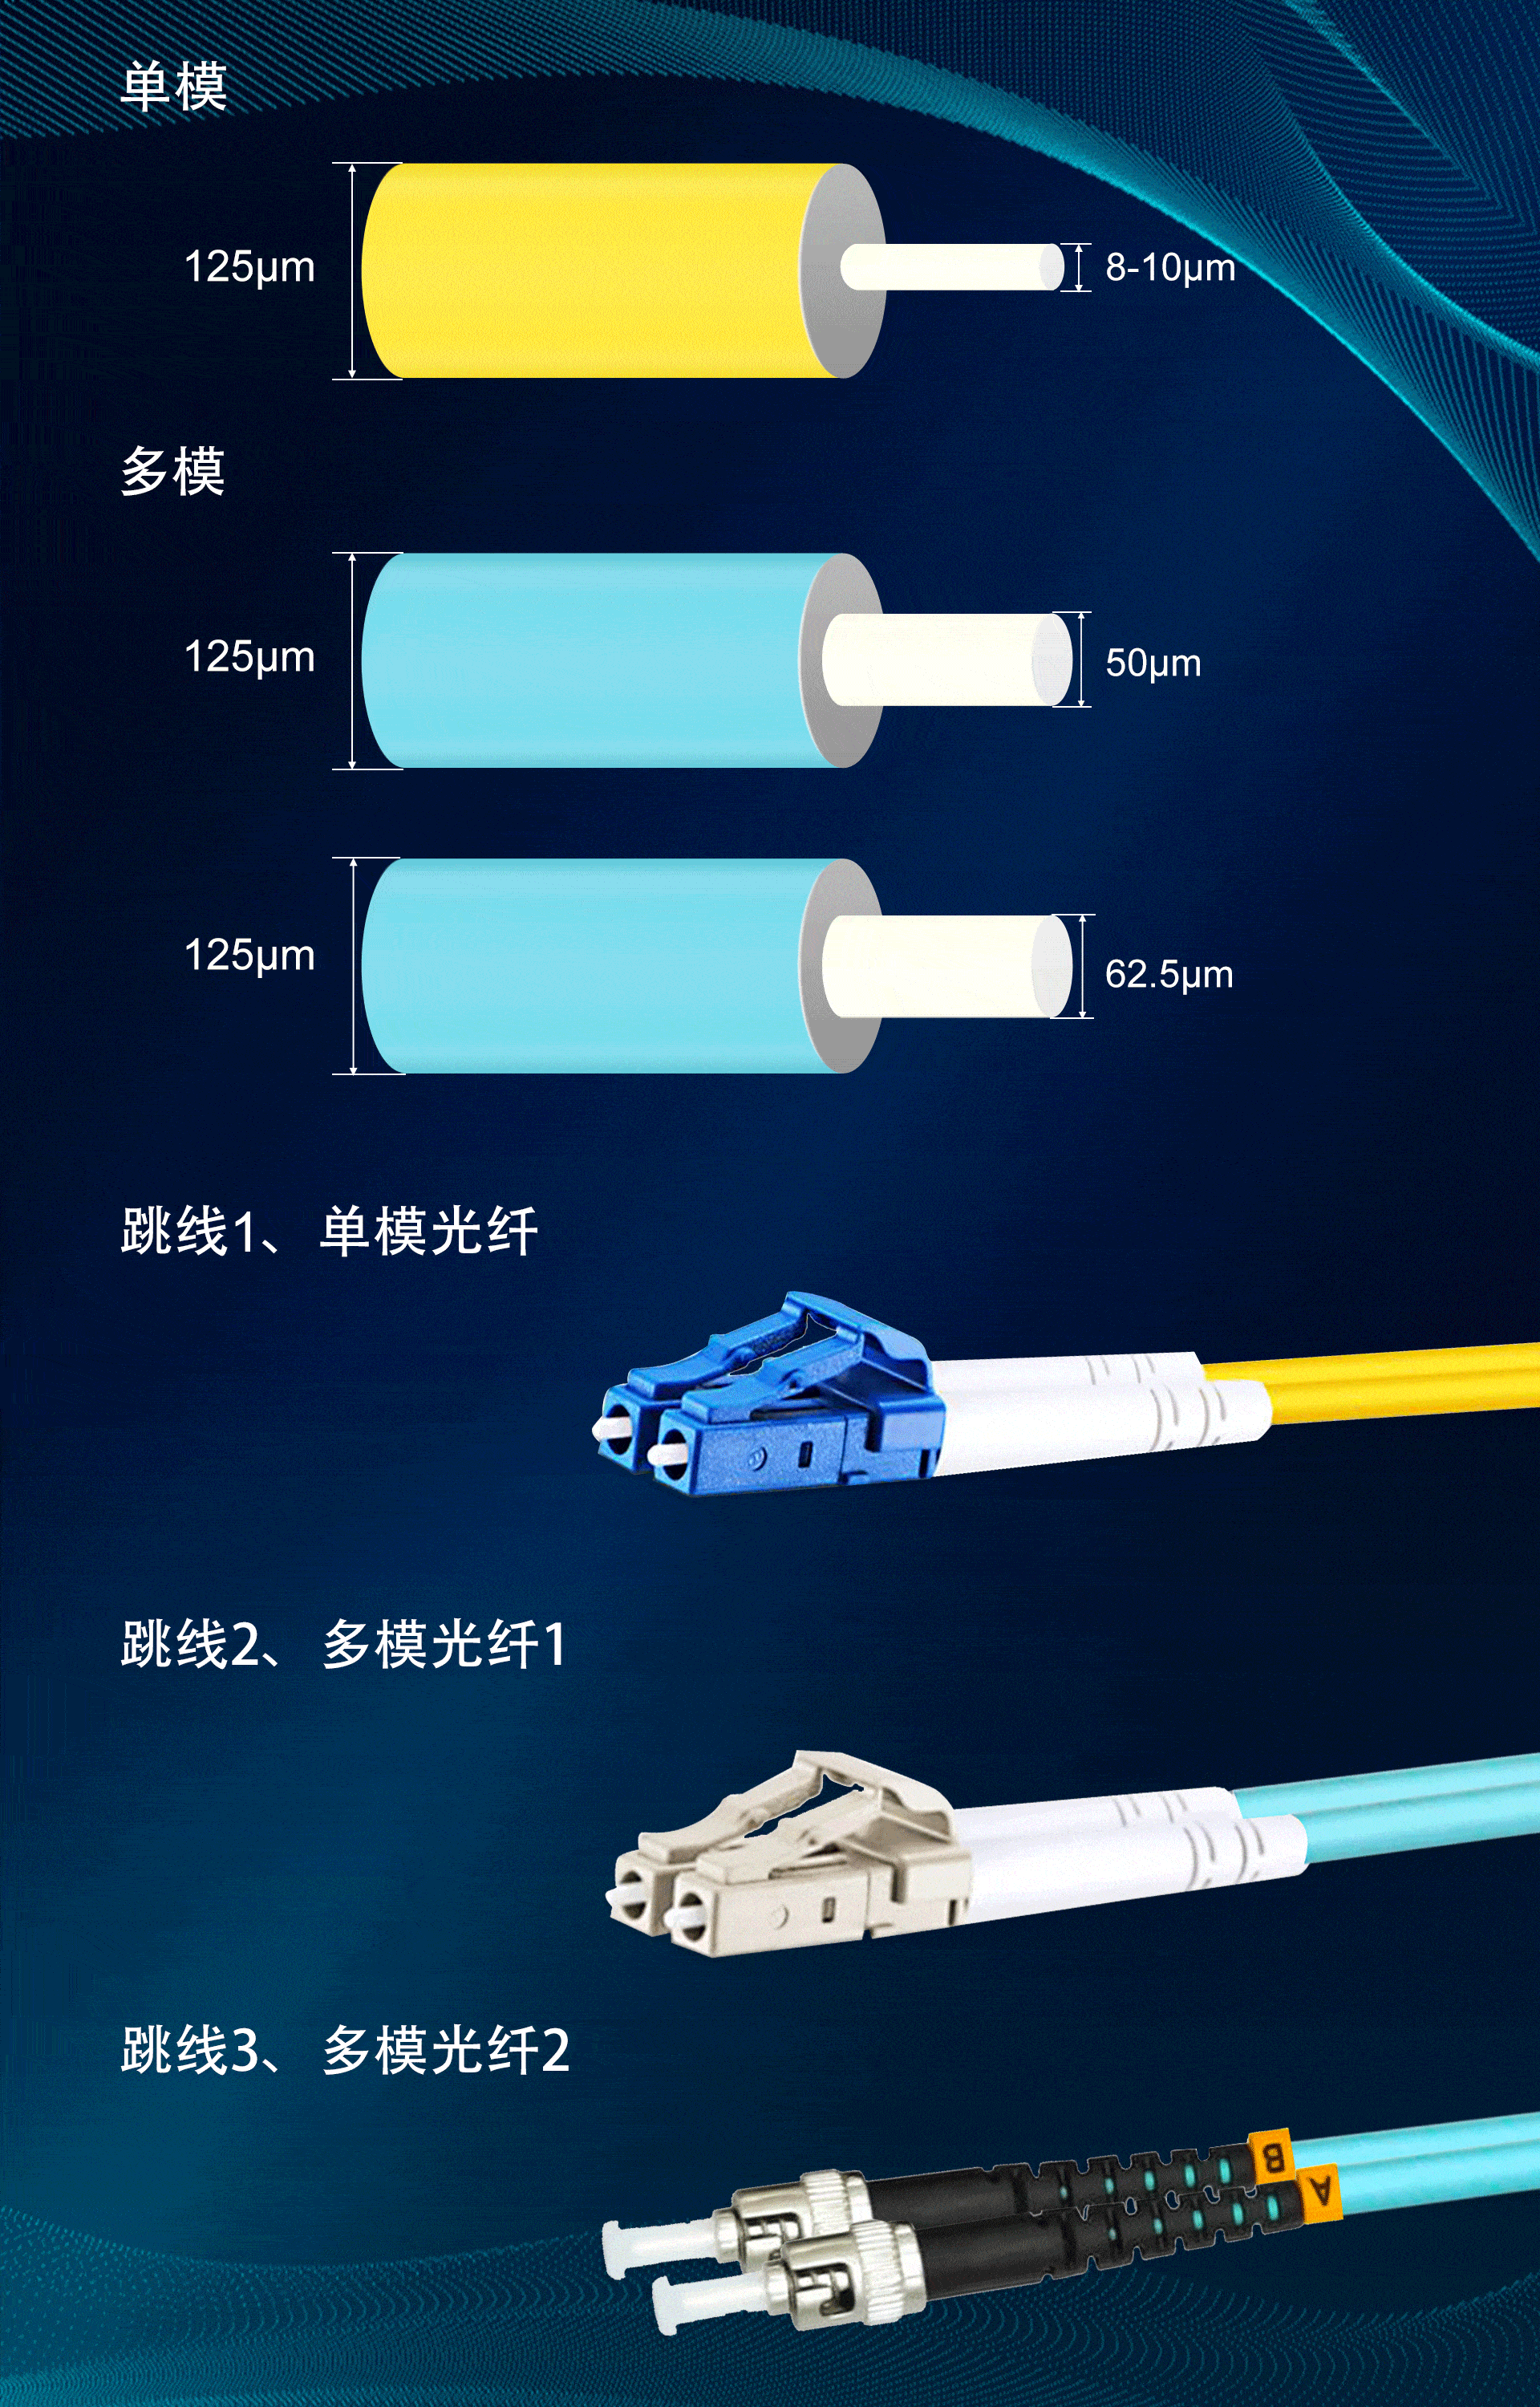 一般光纤跳线颜色是黄色,接头和保护套为蓝色②颜色:多模光纤:通常的